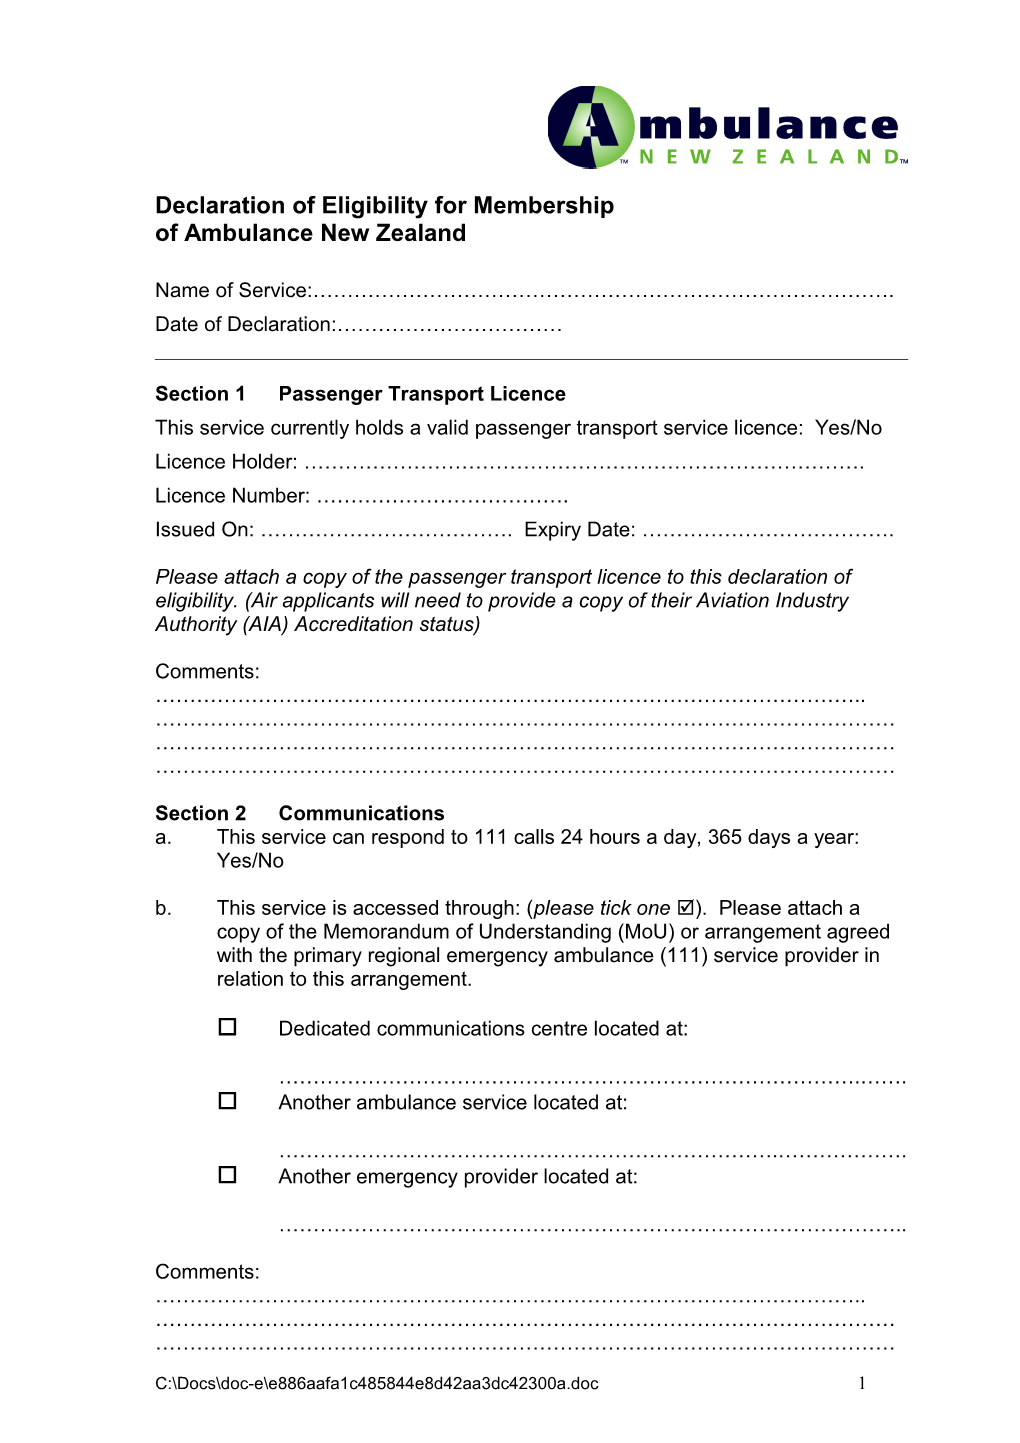 The New Zealand Ambulance Board